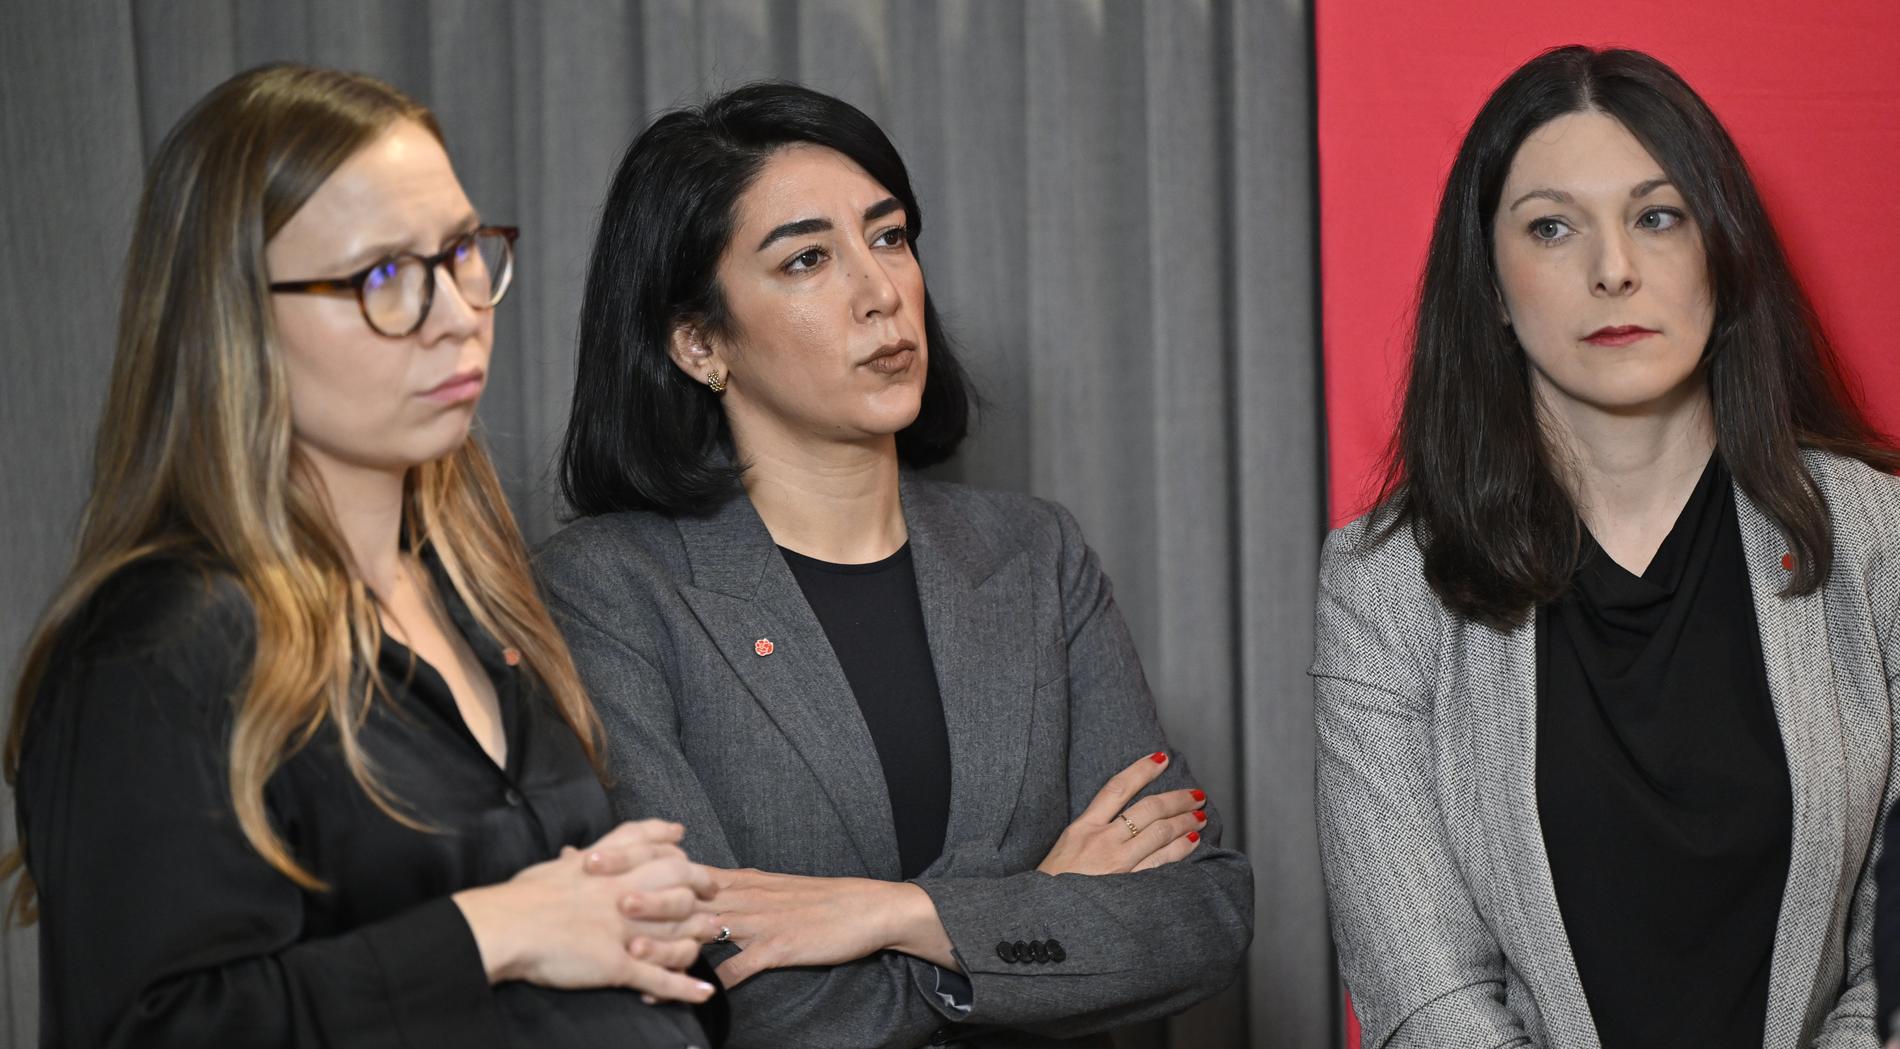 Amalia Rud Pedersen (S), Lawen Redar (S) och Teresa Carvalho (S) vid presentationen av S uppdaterade samhällsanalyser ”Riktning för Sverige” i slutet av förra året.